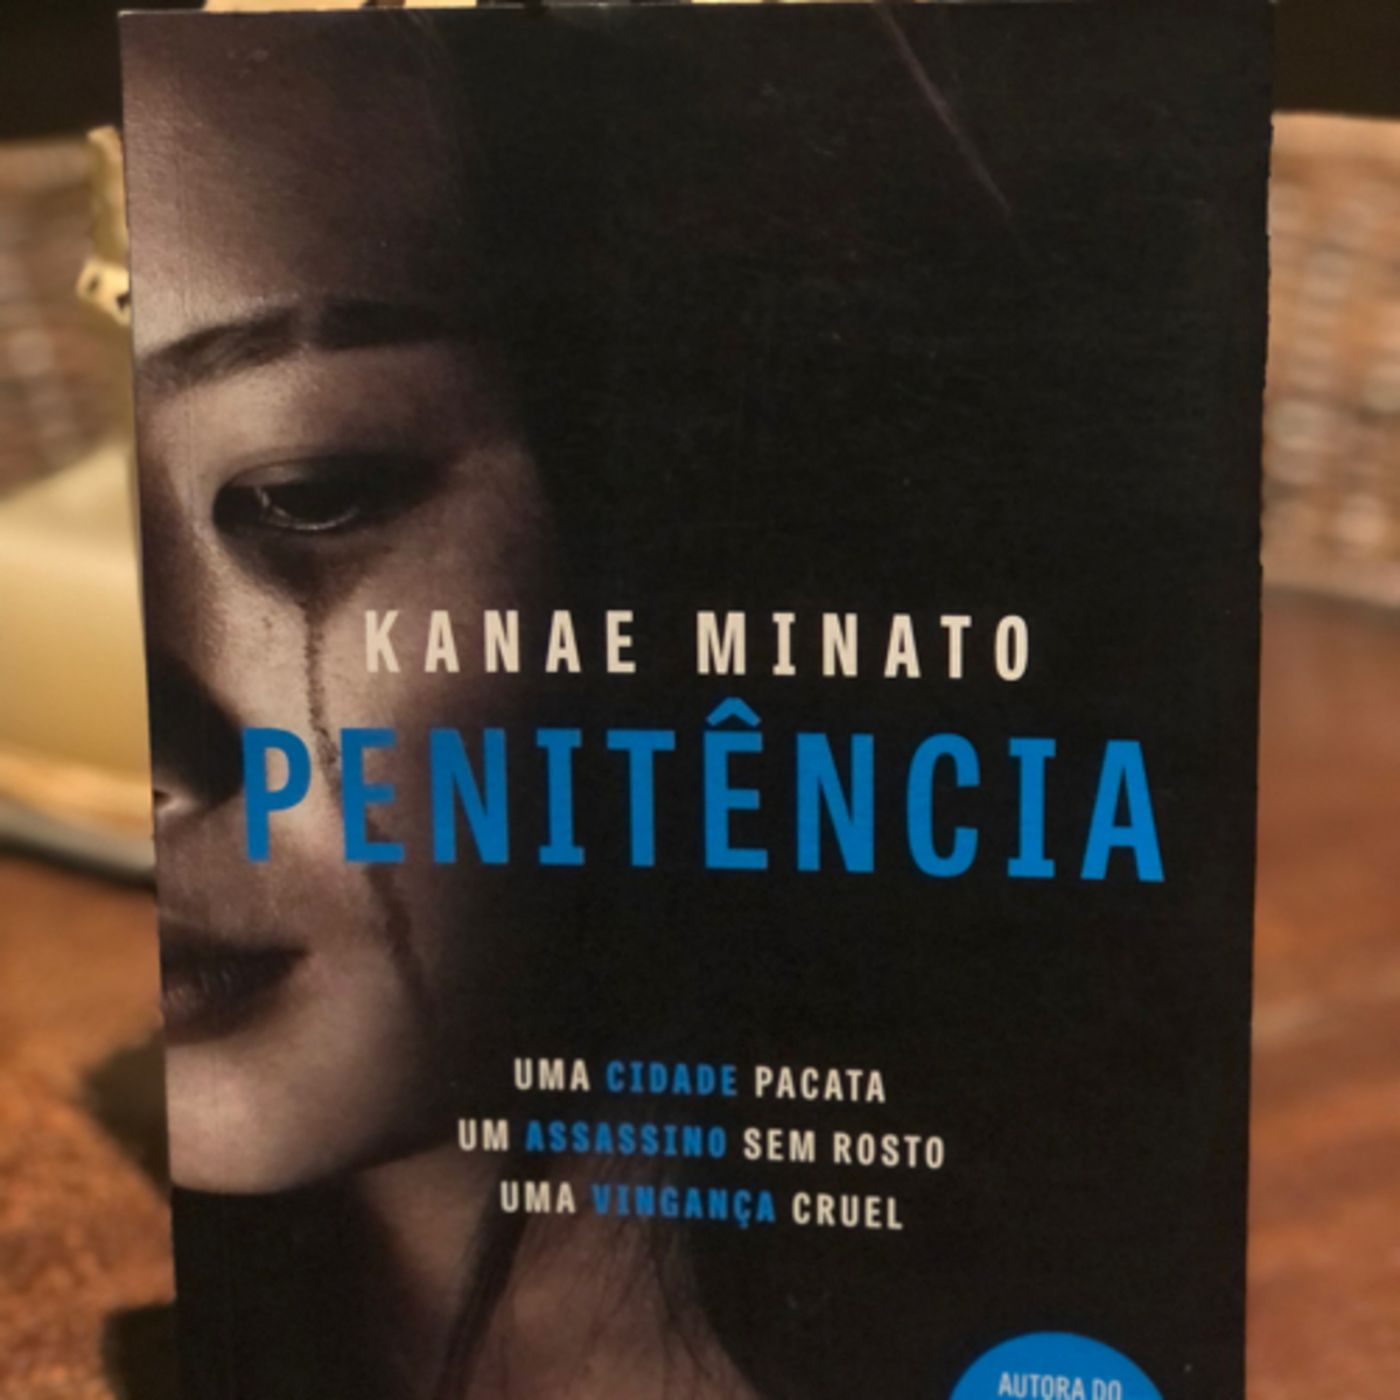 5ª Leitura de "Penitência" da Kanae Minato